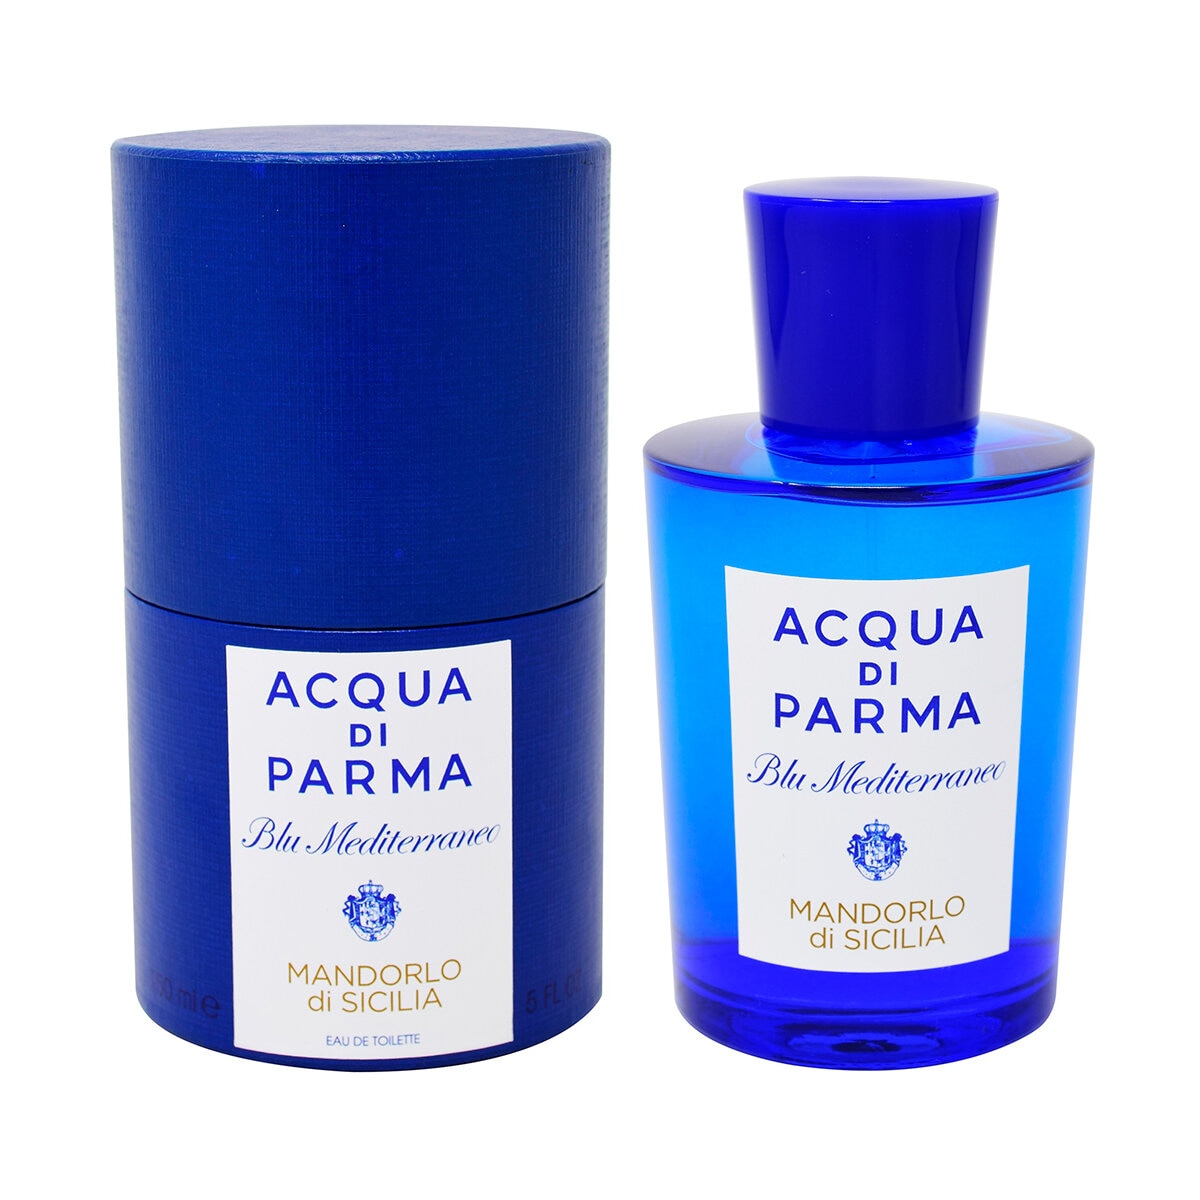 Acqua Di Parma Blu Mediterraneo Mandorlo 150 ml